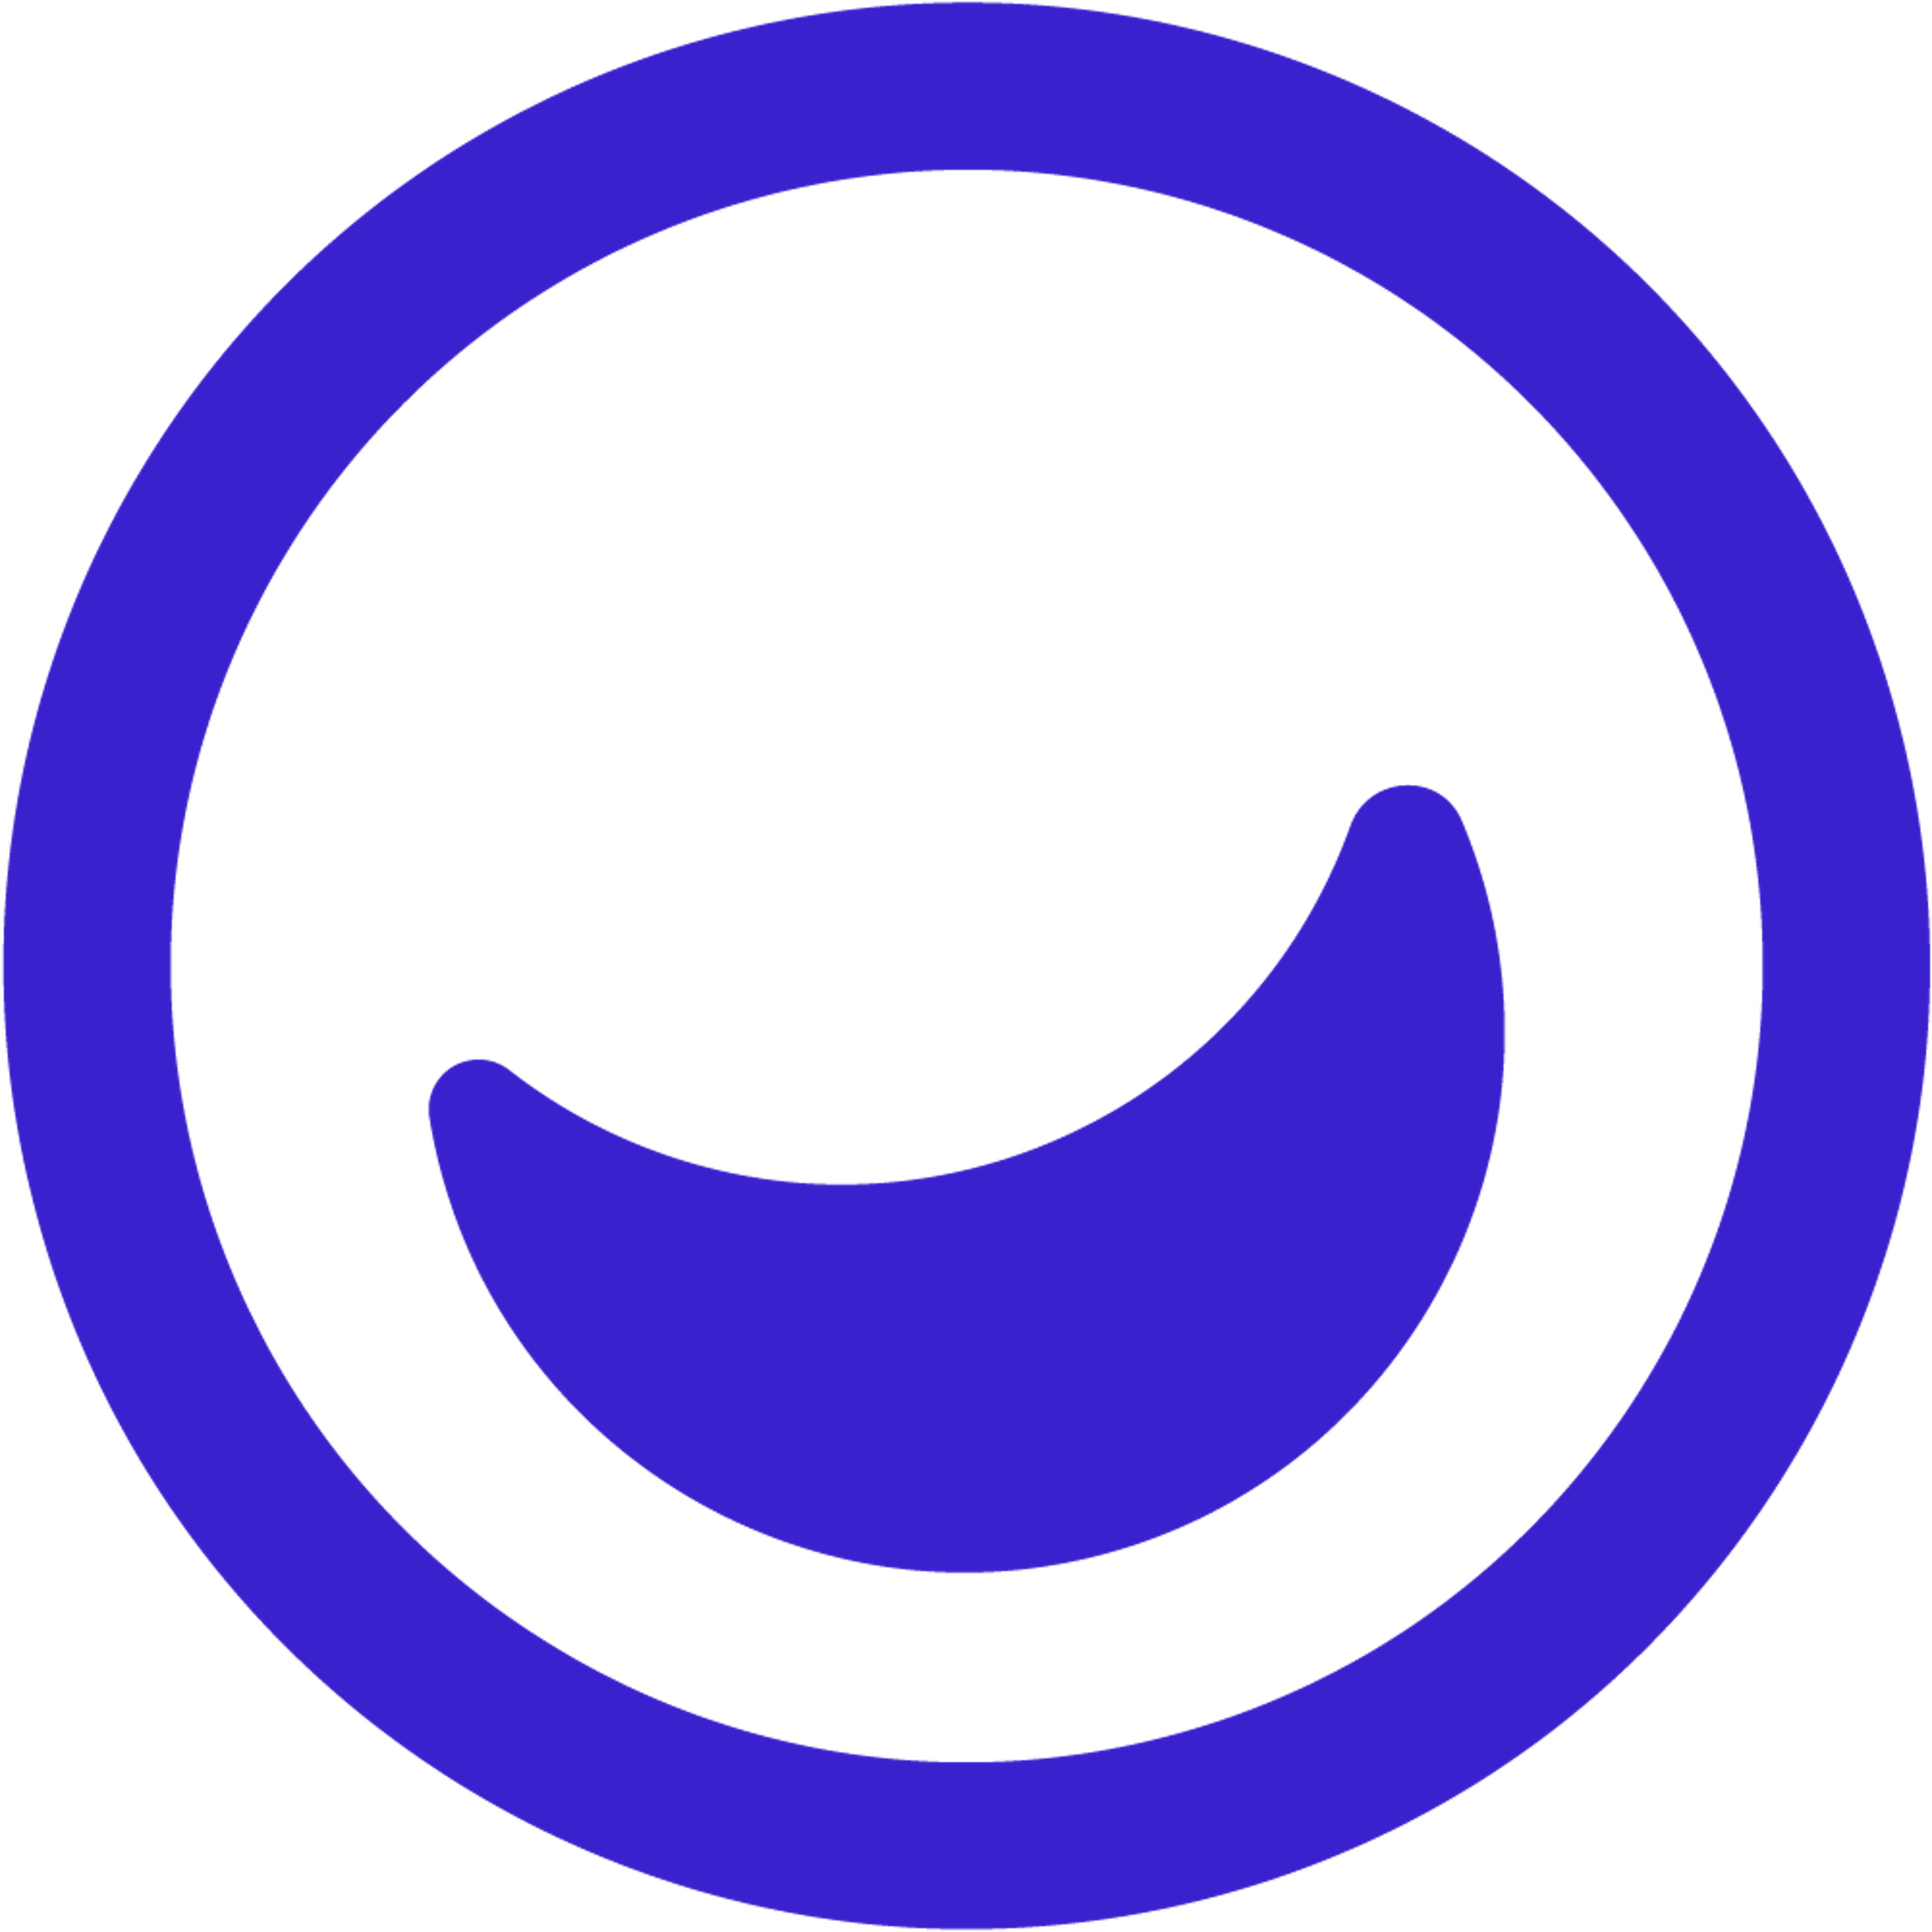 Usersnap Logo